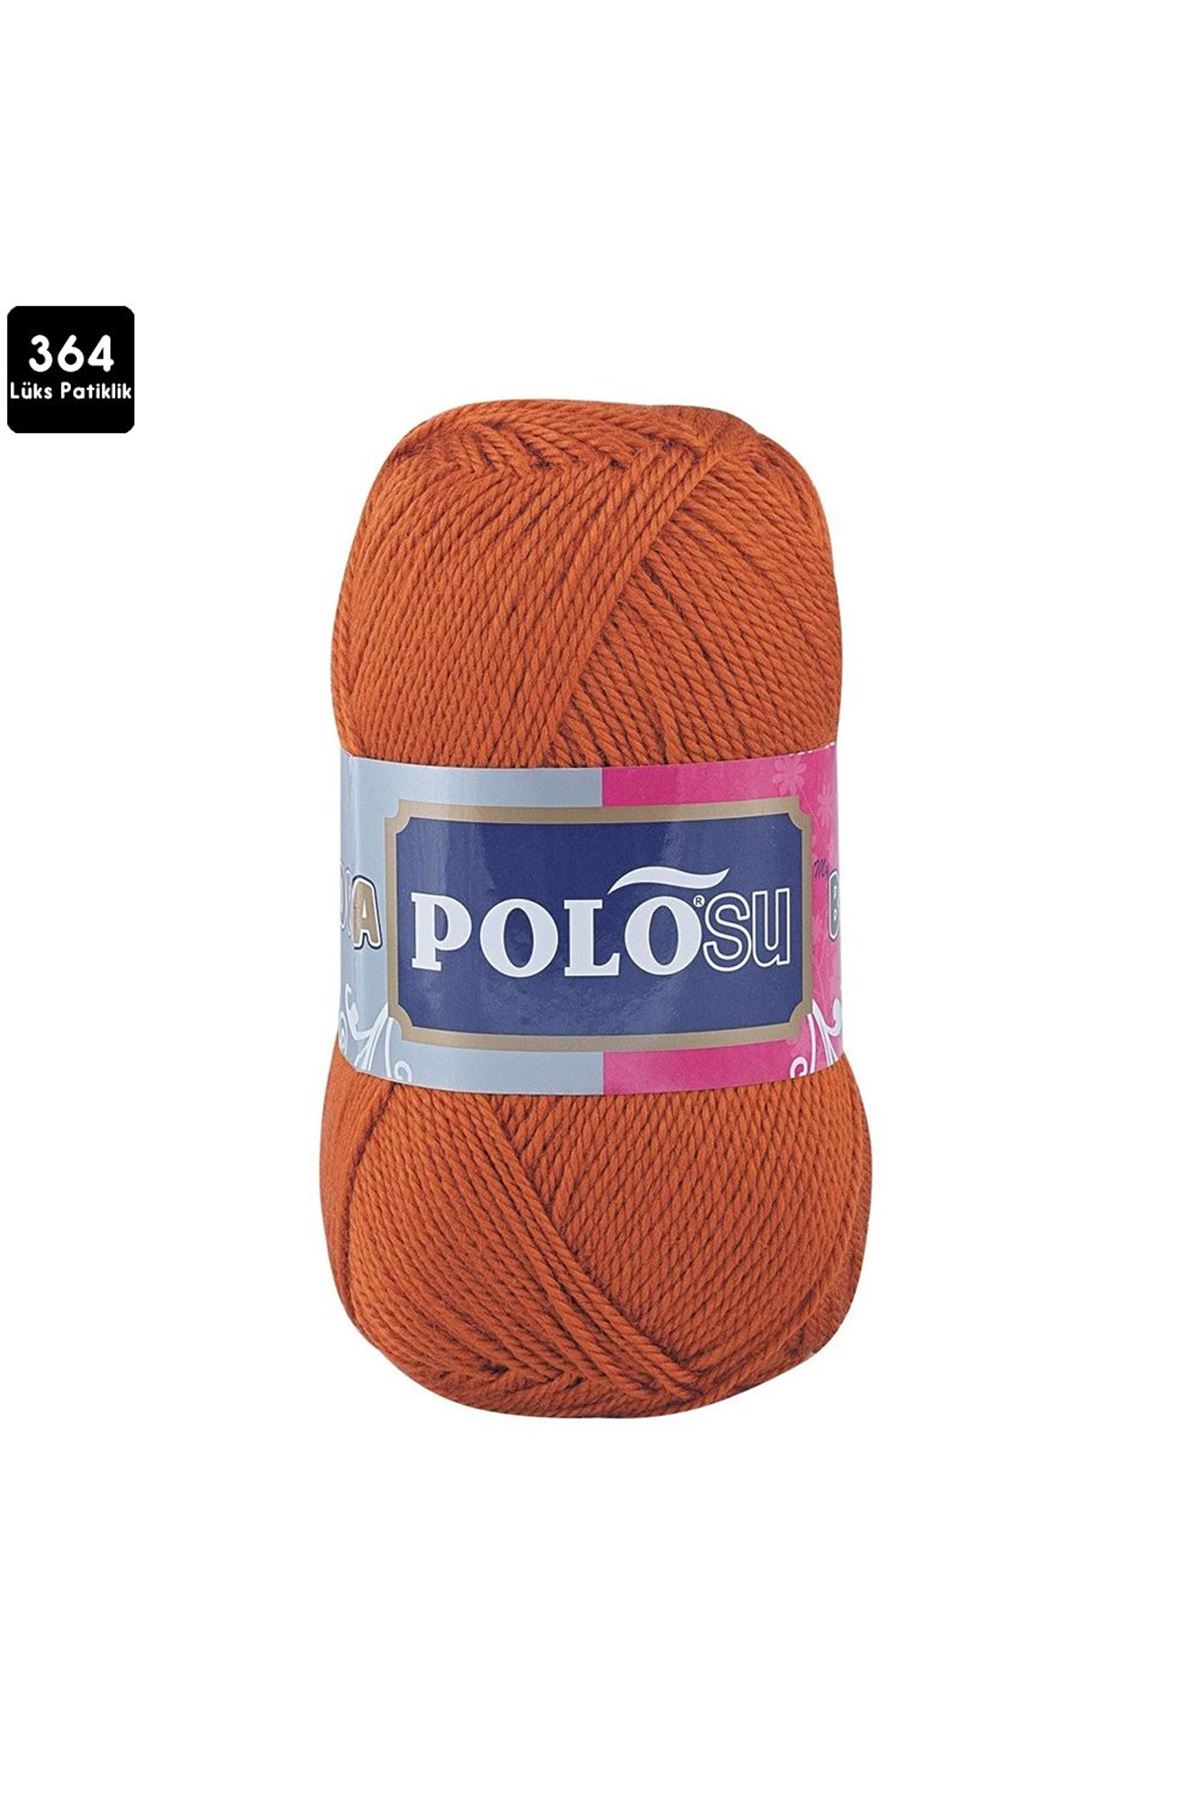 PoloSU Lüks Patiklik Renk No:364